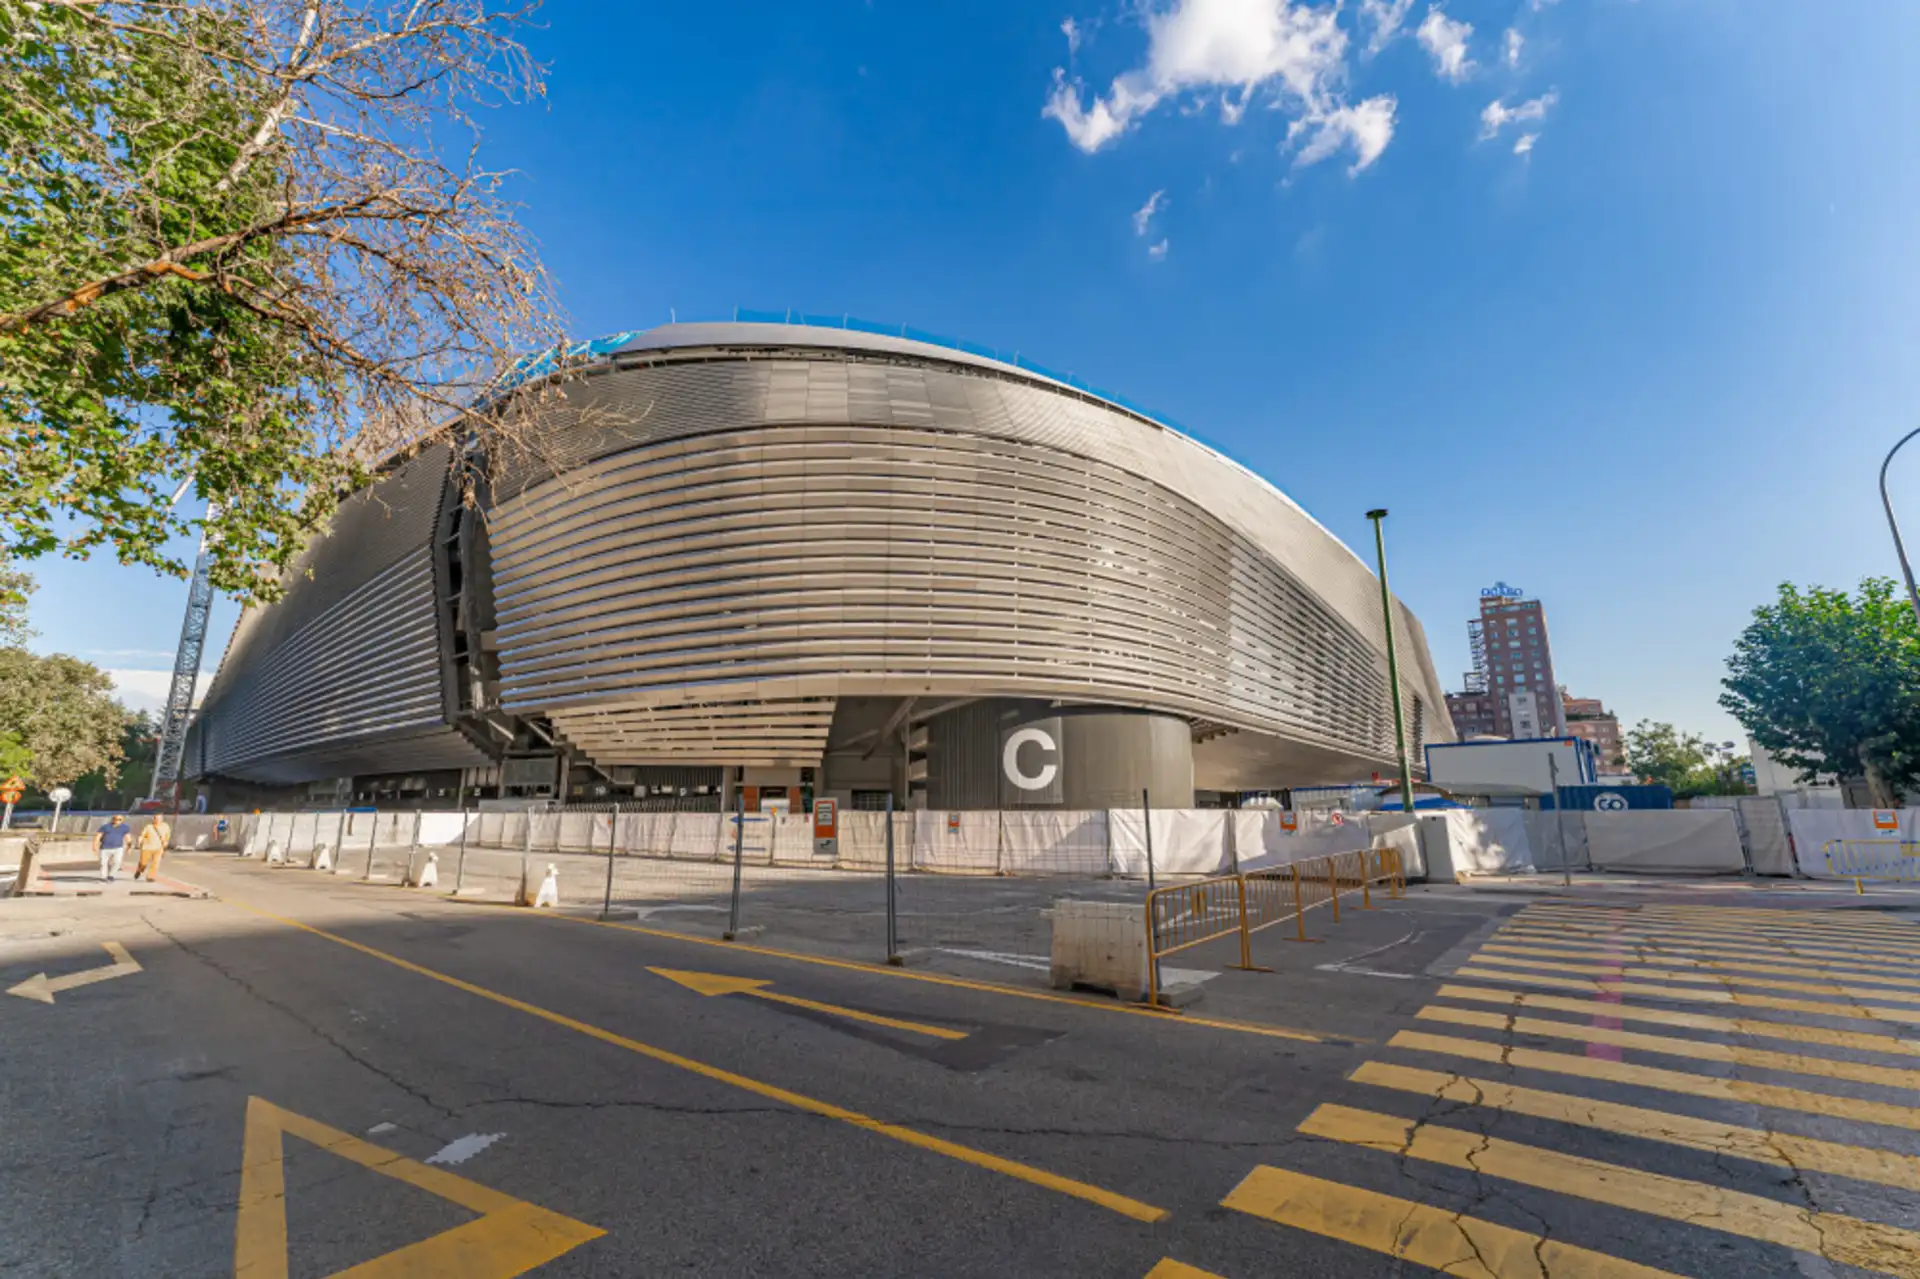 Estadio Santiago Bernabeu en el barrio de Hispanoamérica en Chamartín, Madrid